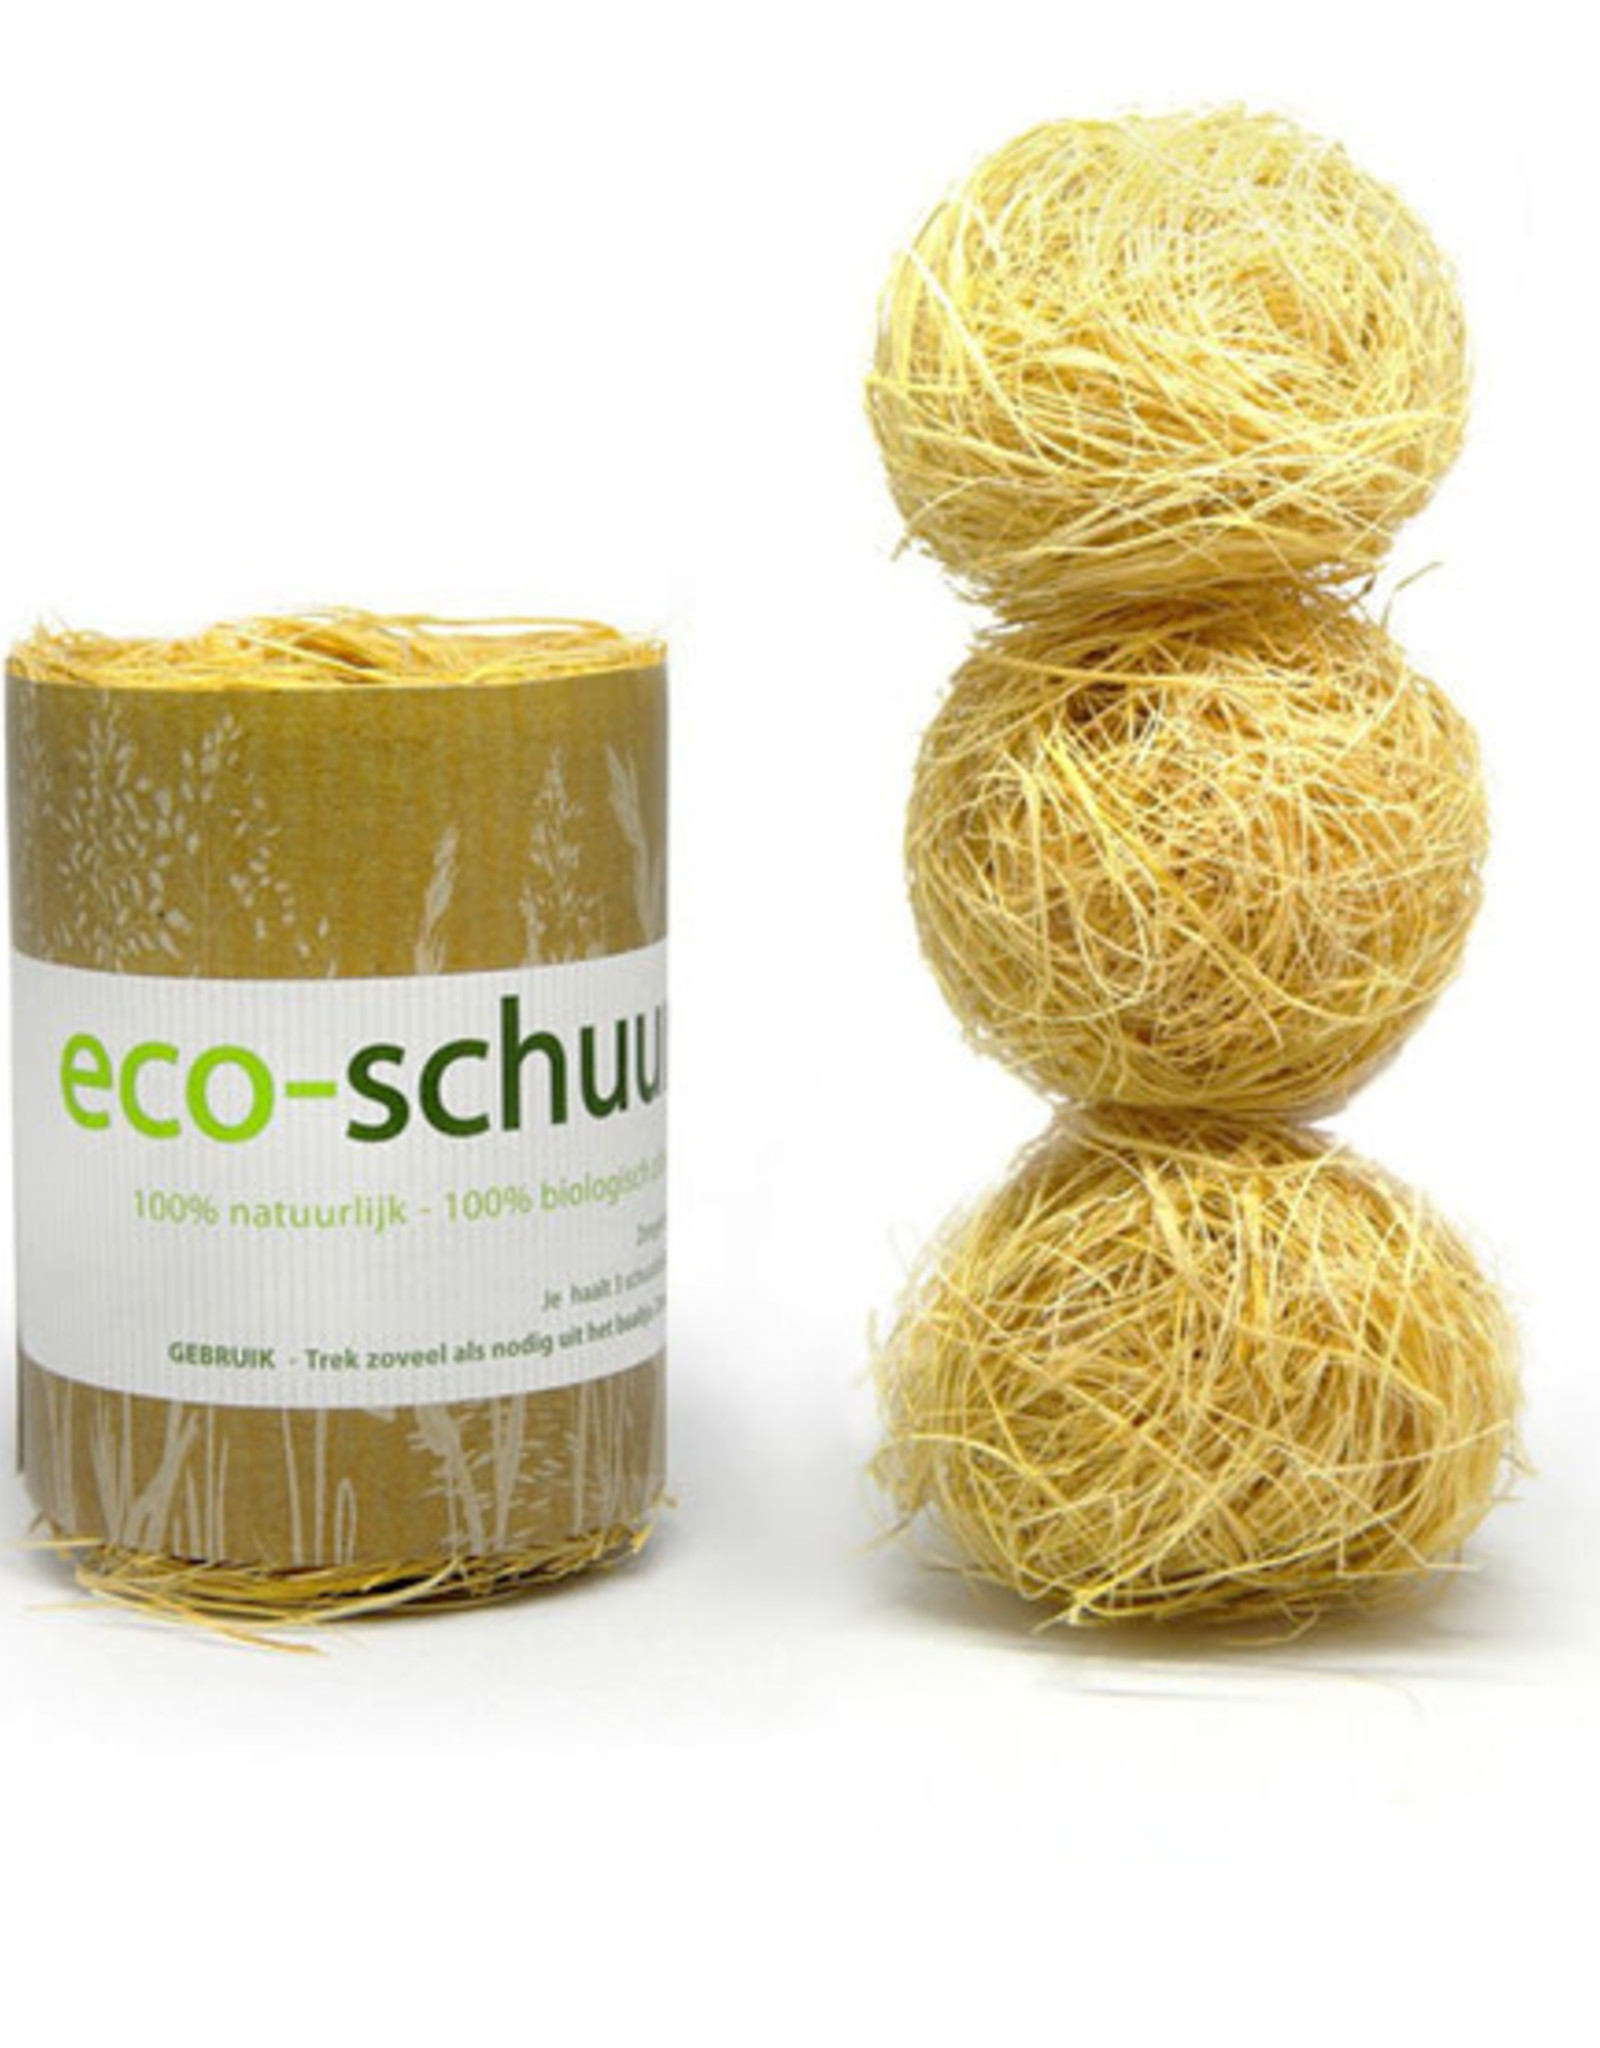 Eco-schuurspons Eco-schuurspons - 100% natuurlijk - 100% biologisch afbreekbaar